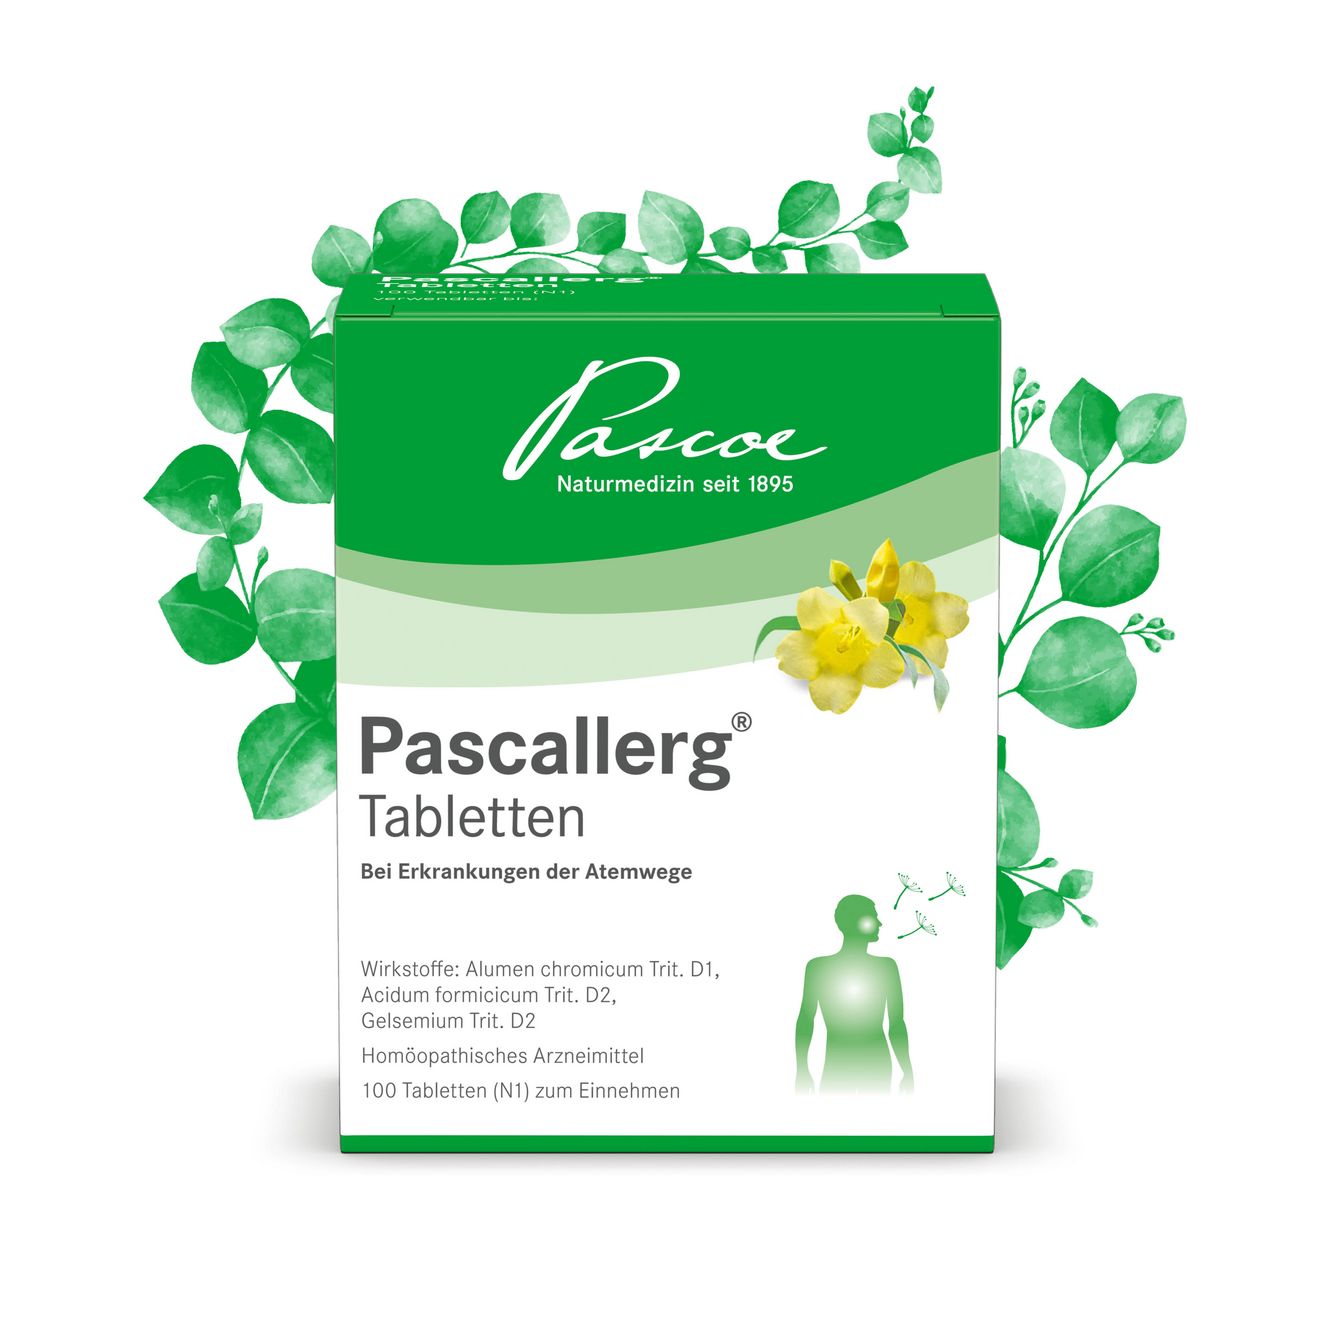 Pascallerg®: seit Jahrzehnten bei Heuschnupfen bewährt